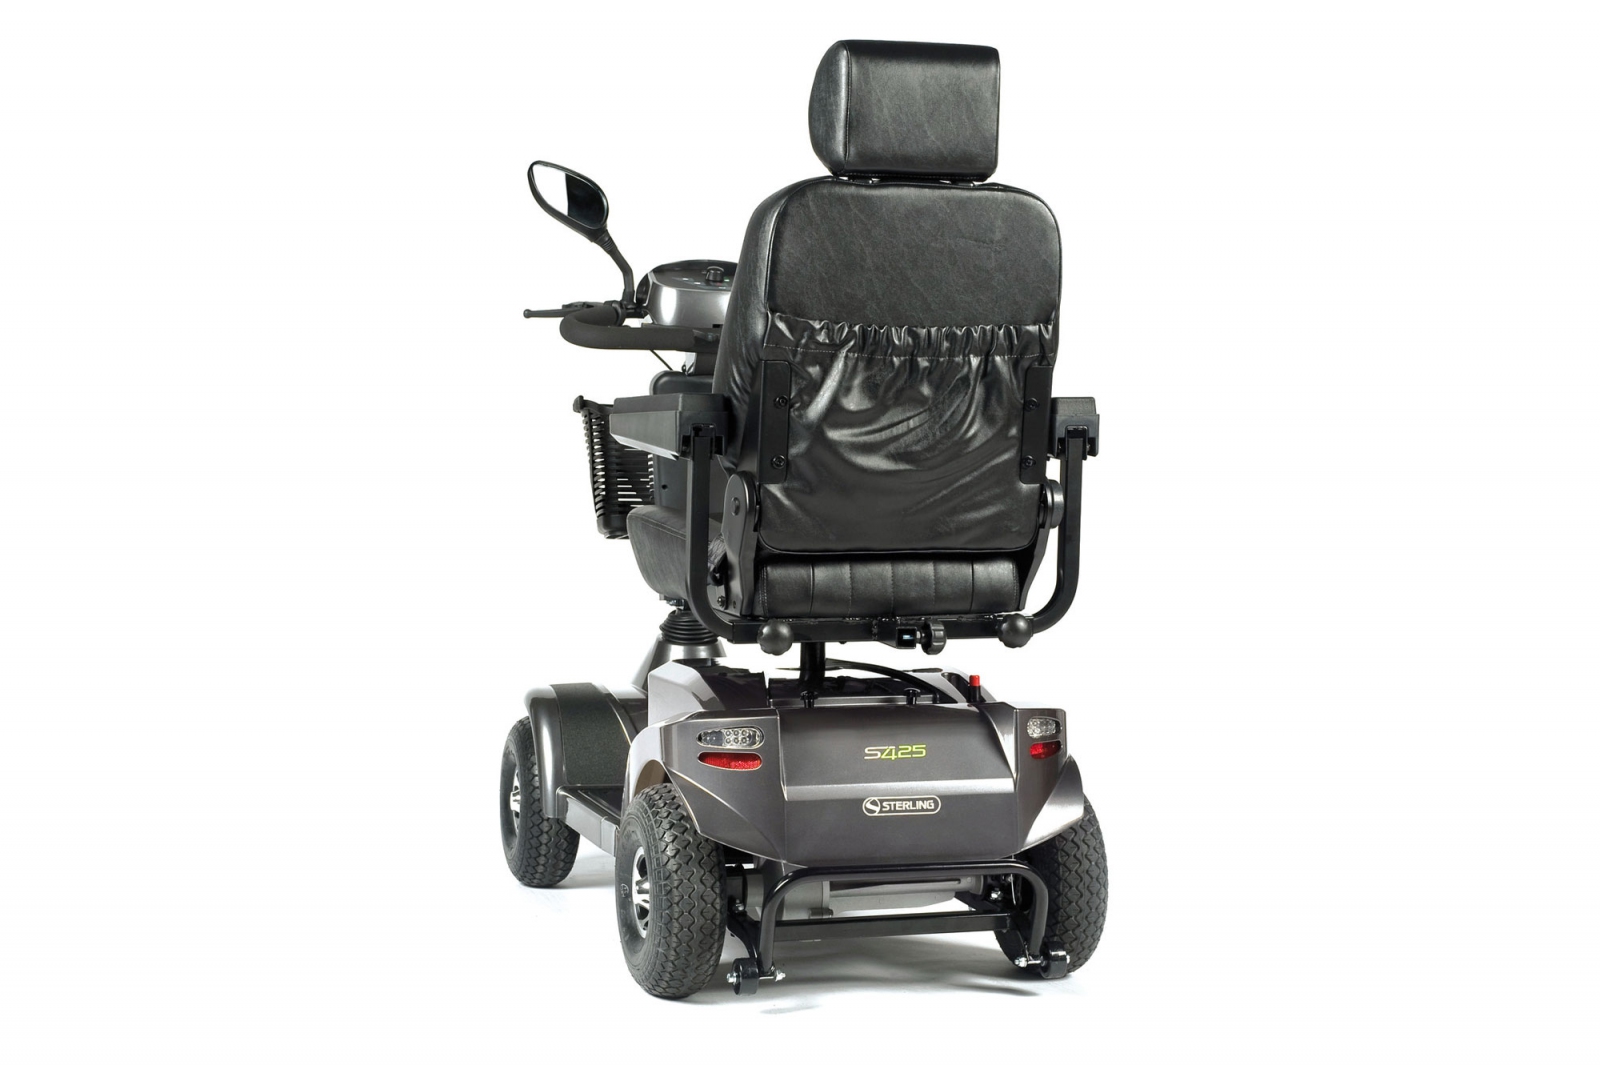 Wózek inwalidzki elektryczny (skuter) Sterling S425